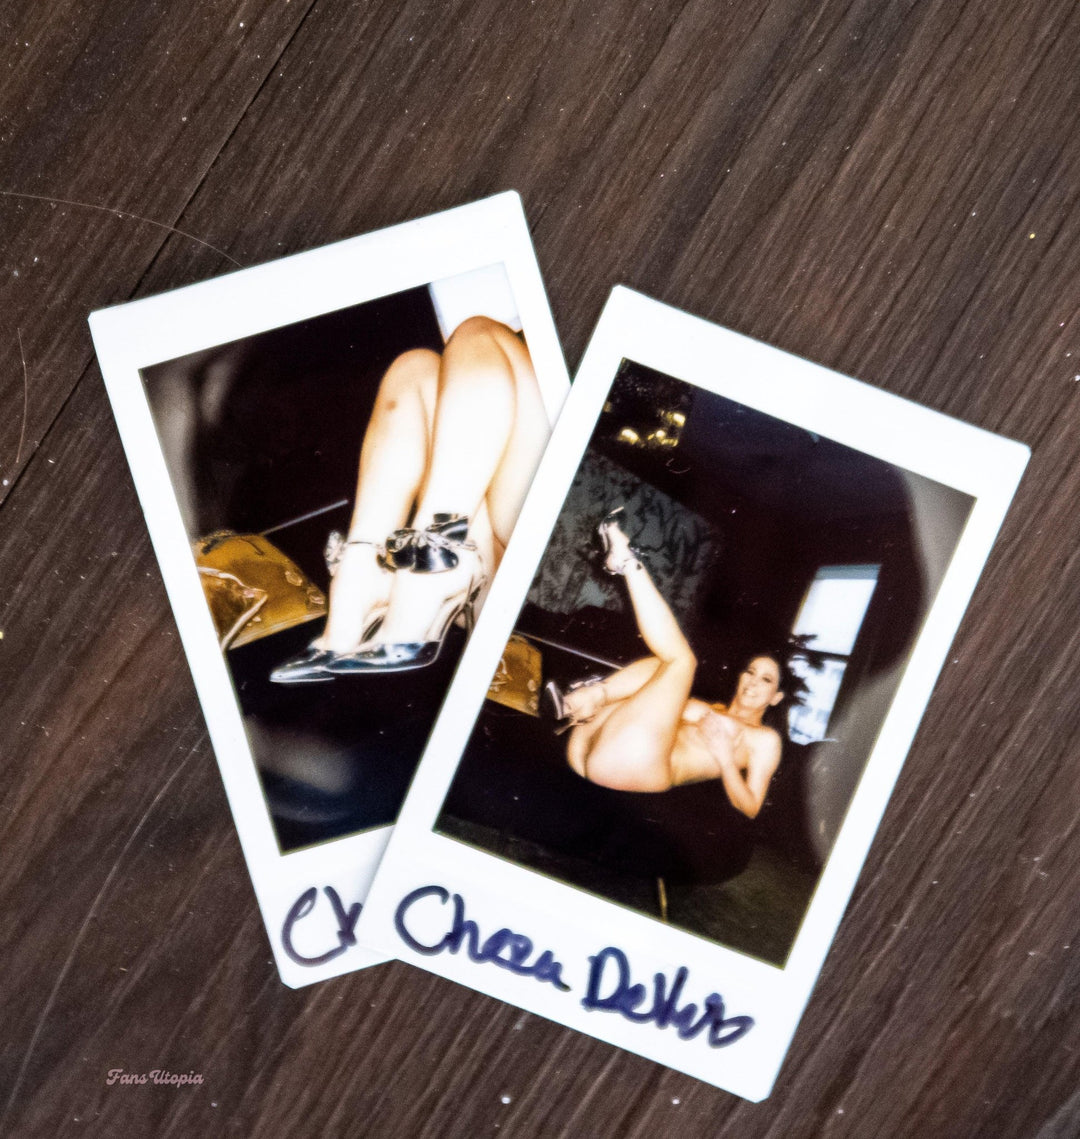 Cherie DeVille Silver Bow High Heels & Choaker - FANS UTOPIA